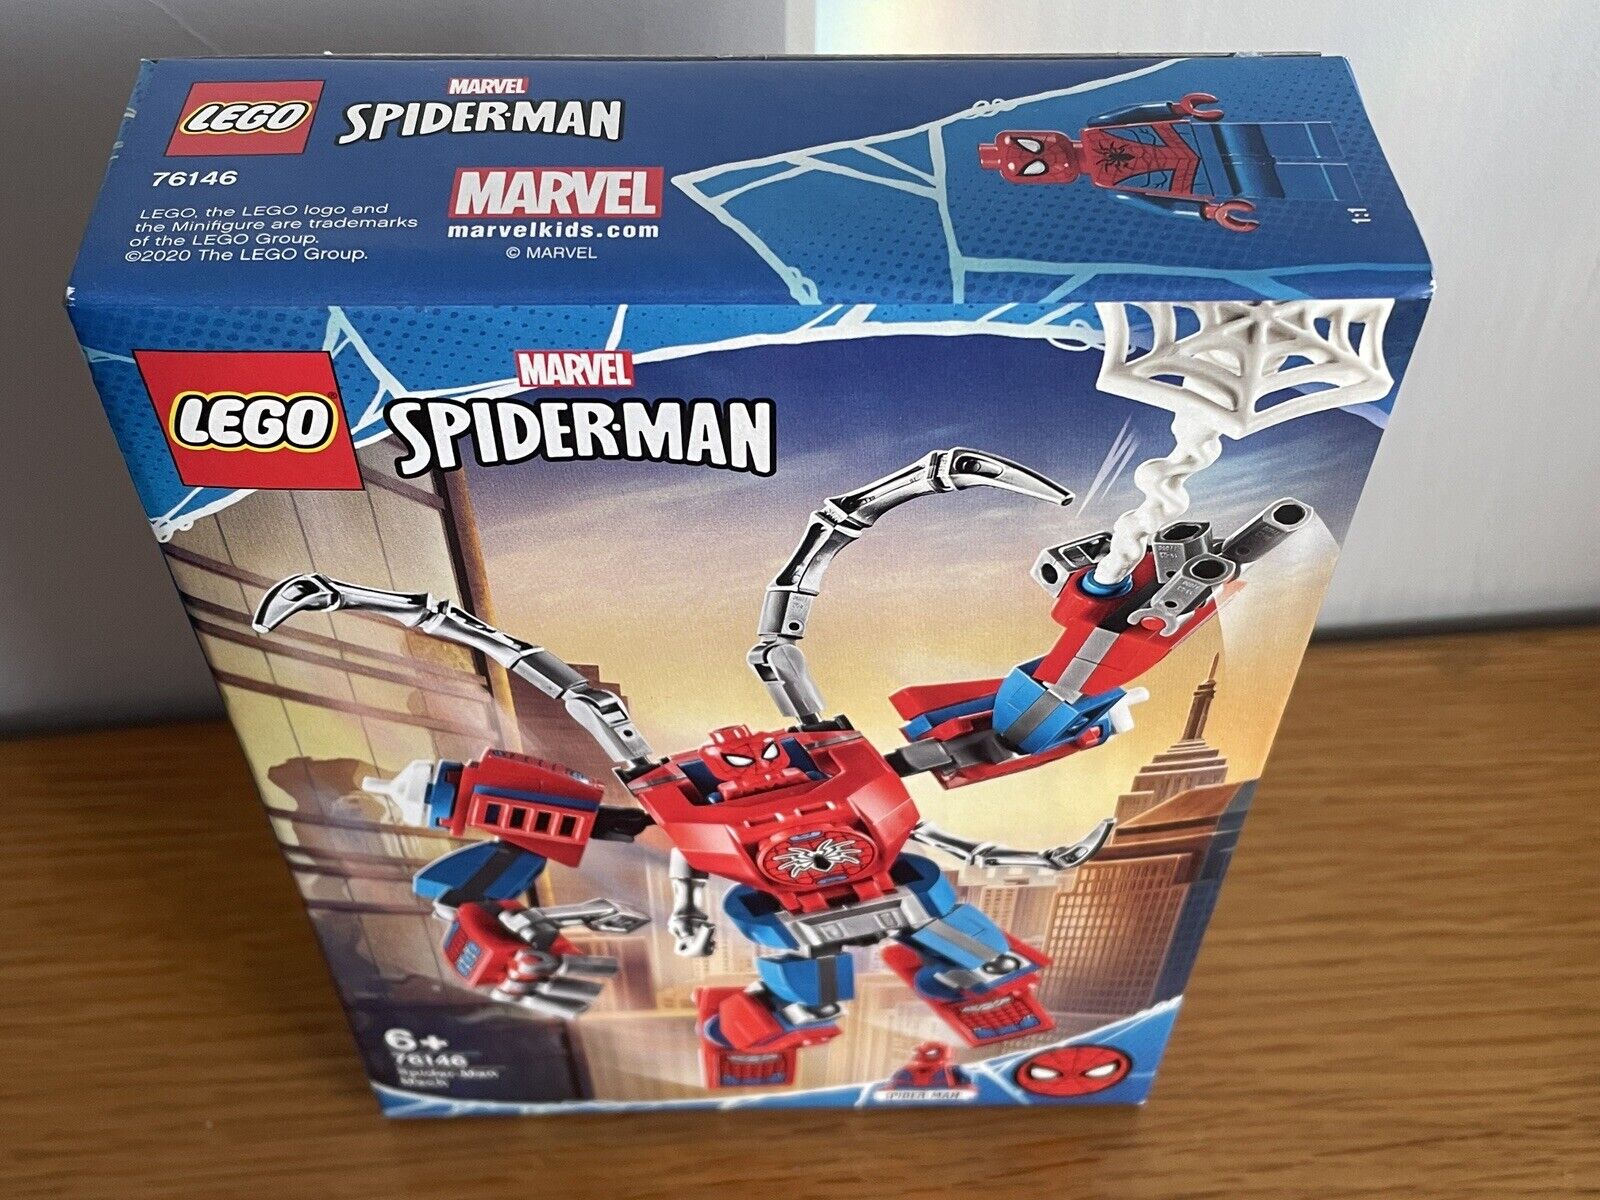 LEGO Super Heroes: Marvel Spider-Man Mech Building Set (76146